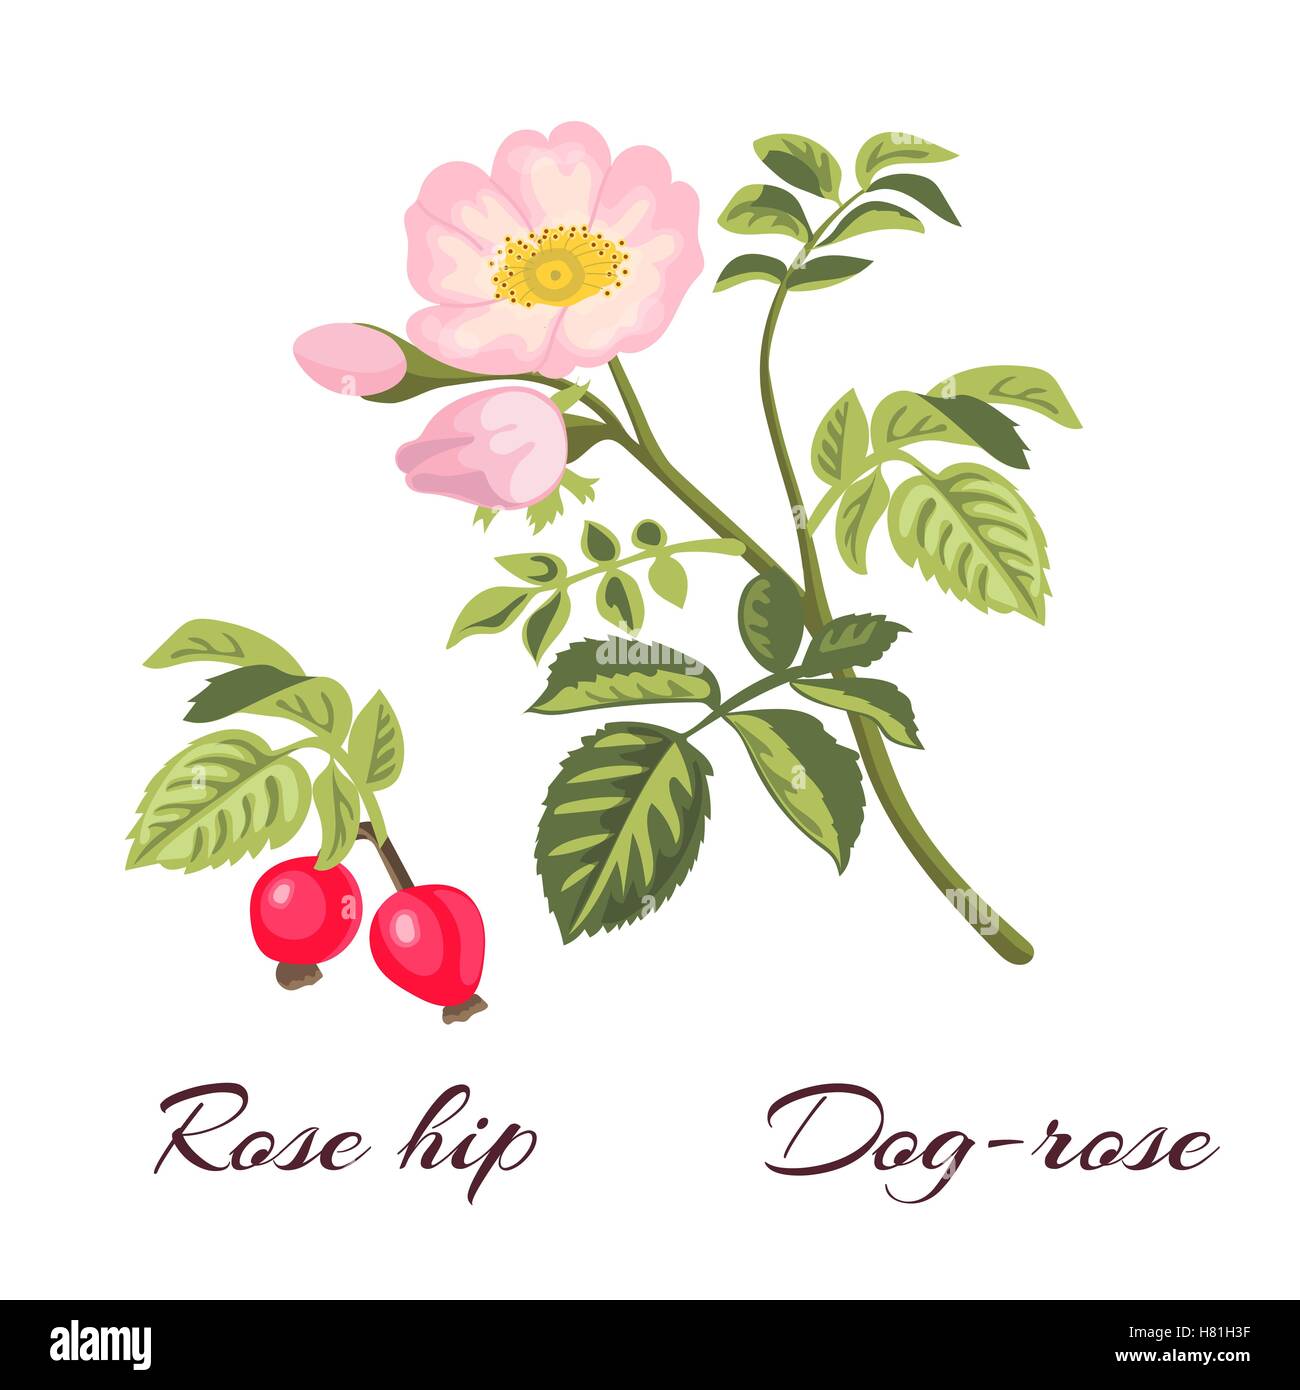 La rosa canina ramo con foglie e fiori. Rosa selvatica. Rosa canina. Rosa  Mosqueta noto anche come il rose haw o rosa hep.illustrazione vettoriale  Immagine e Vettoriale - Alamy